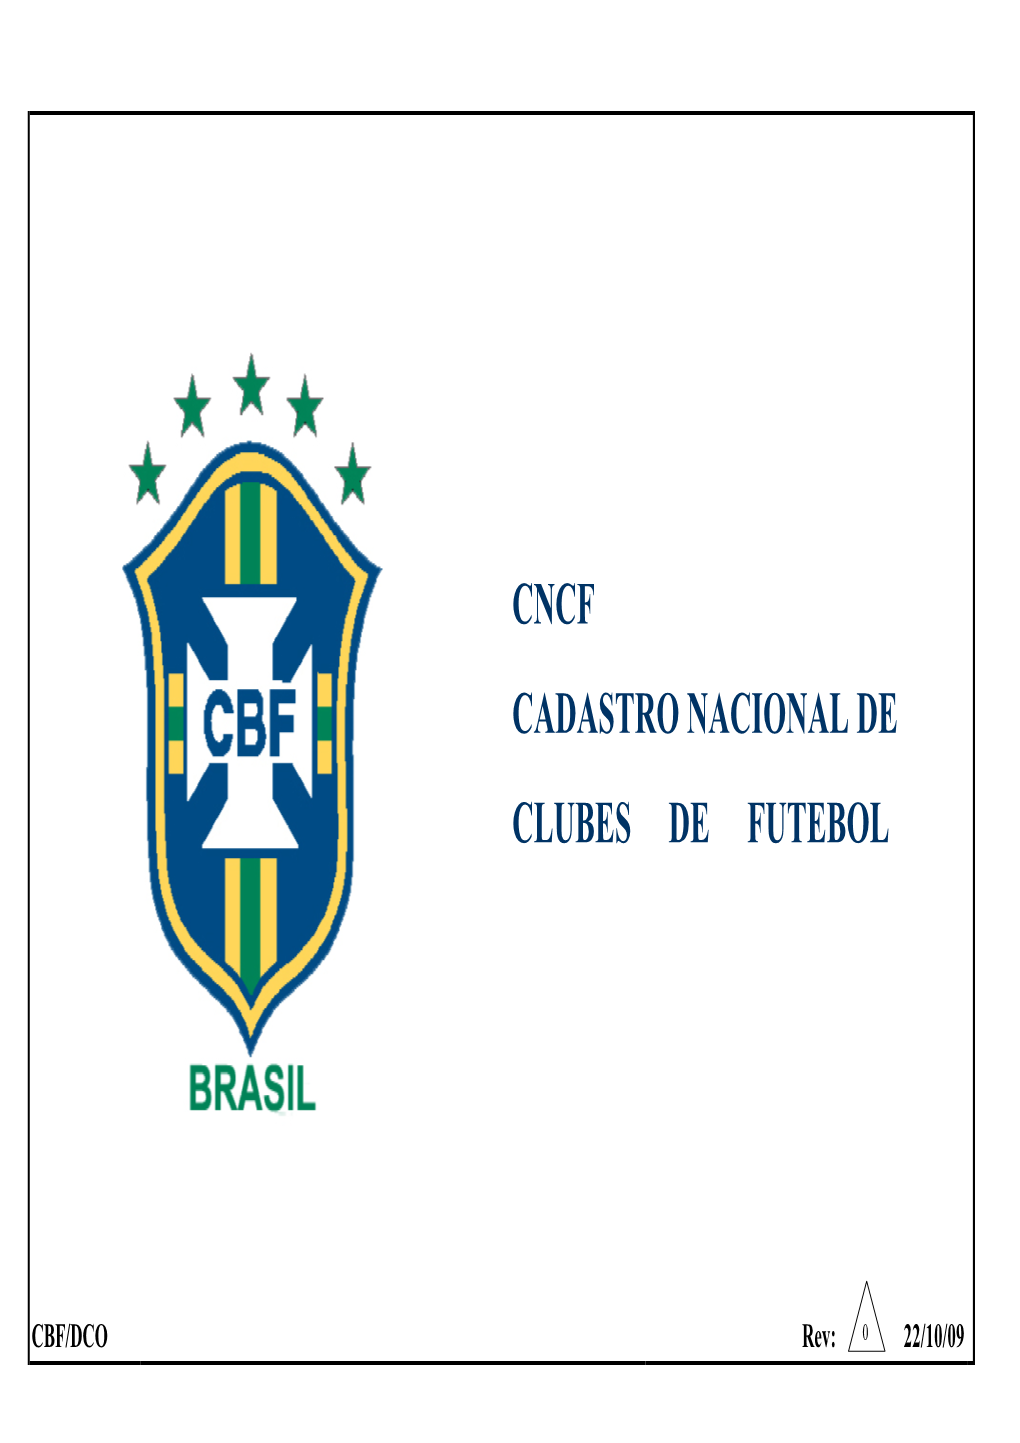 Cadastro Nacional De Clubes De Futebol